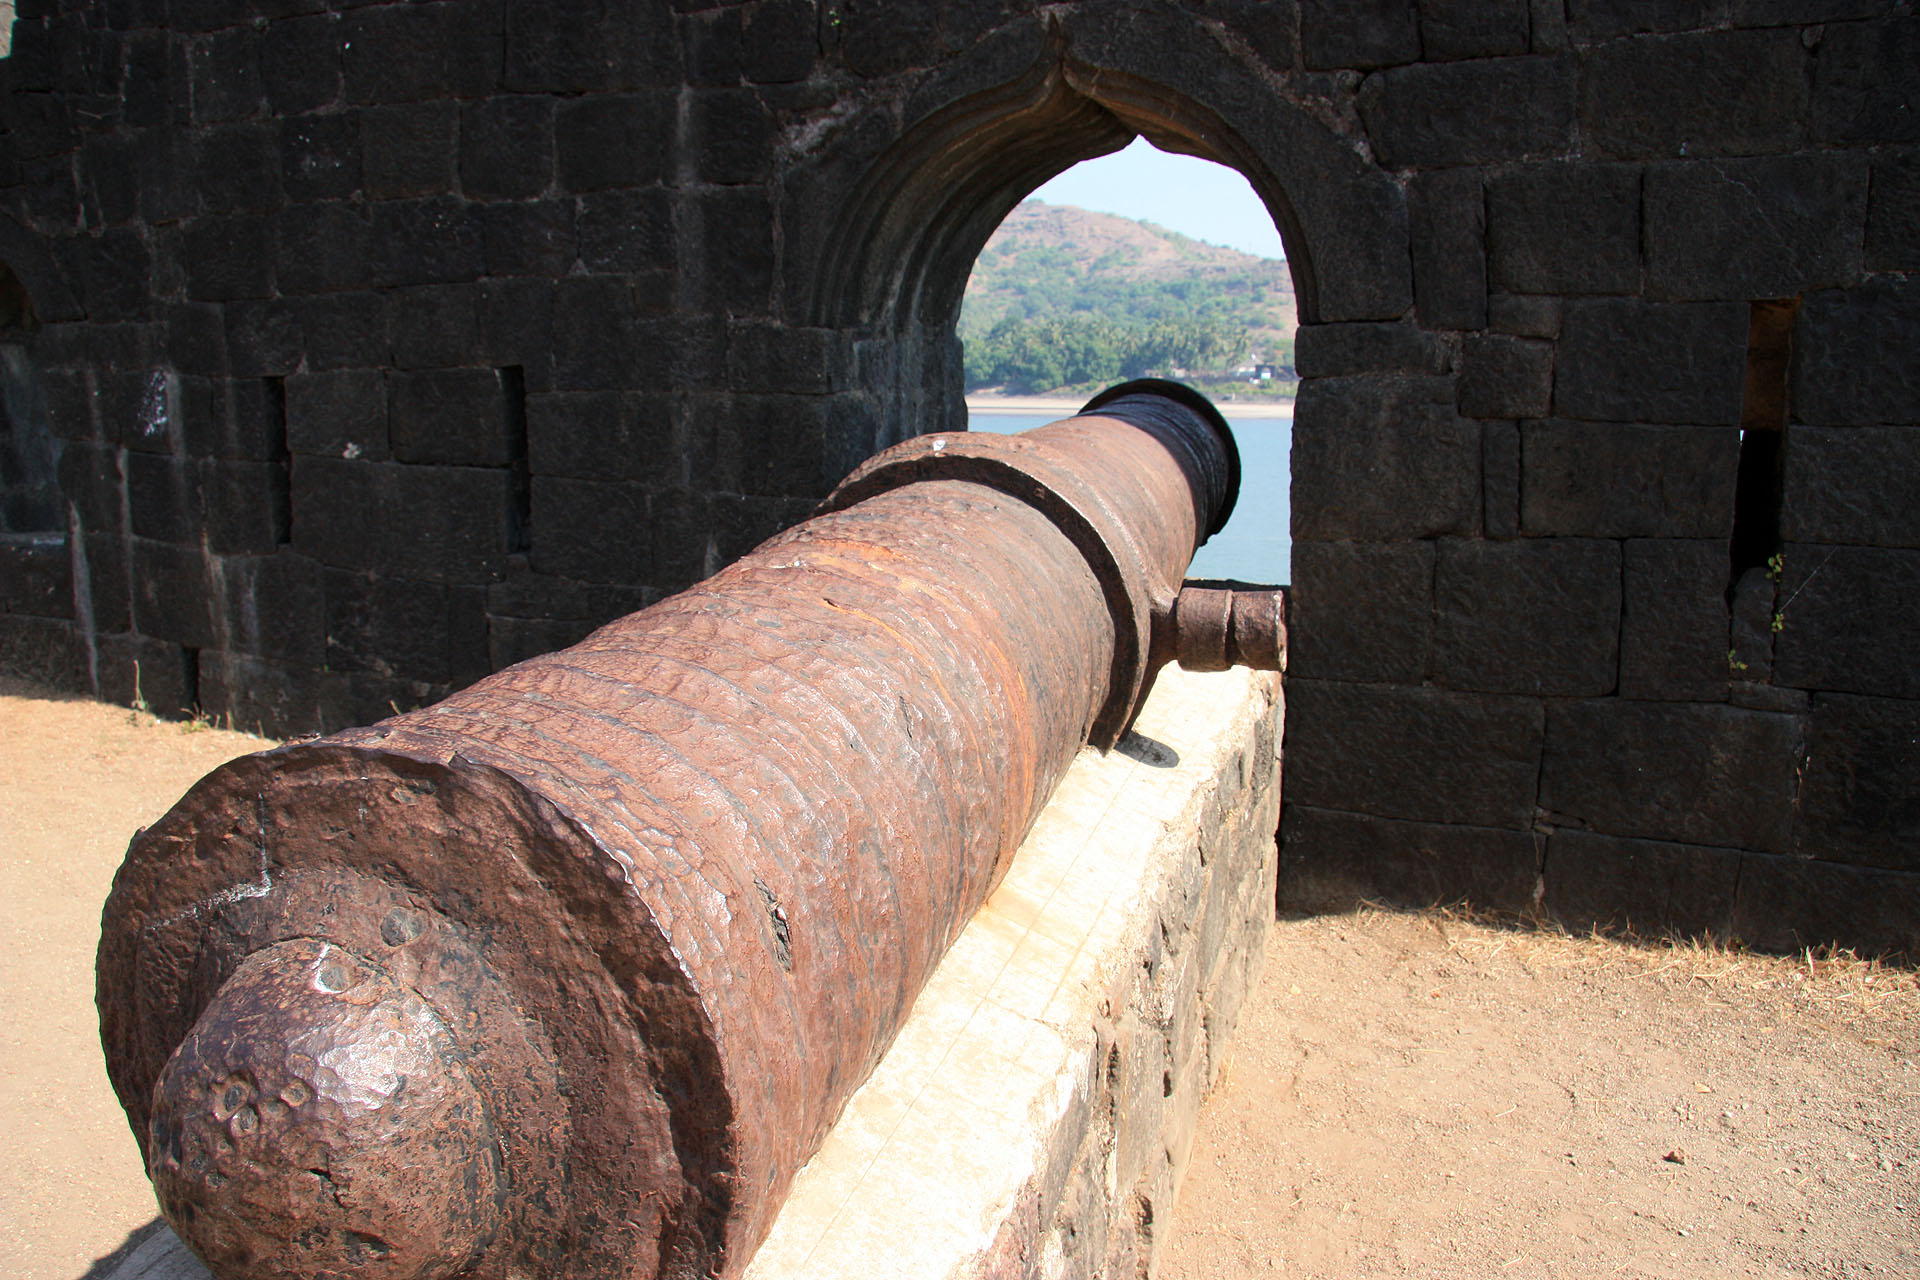 Janjira Fort - Murud